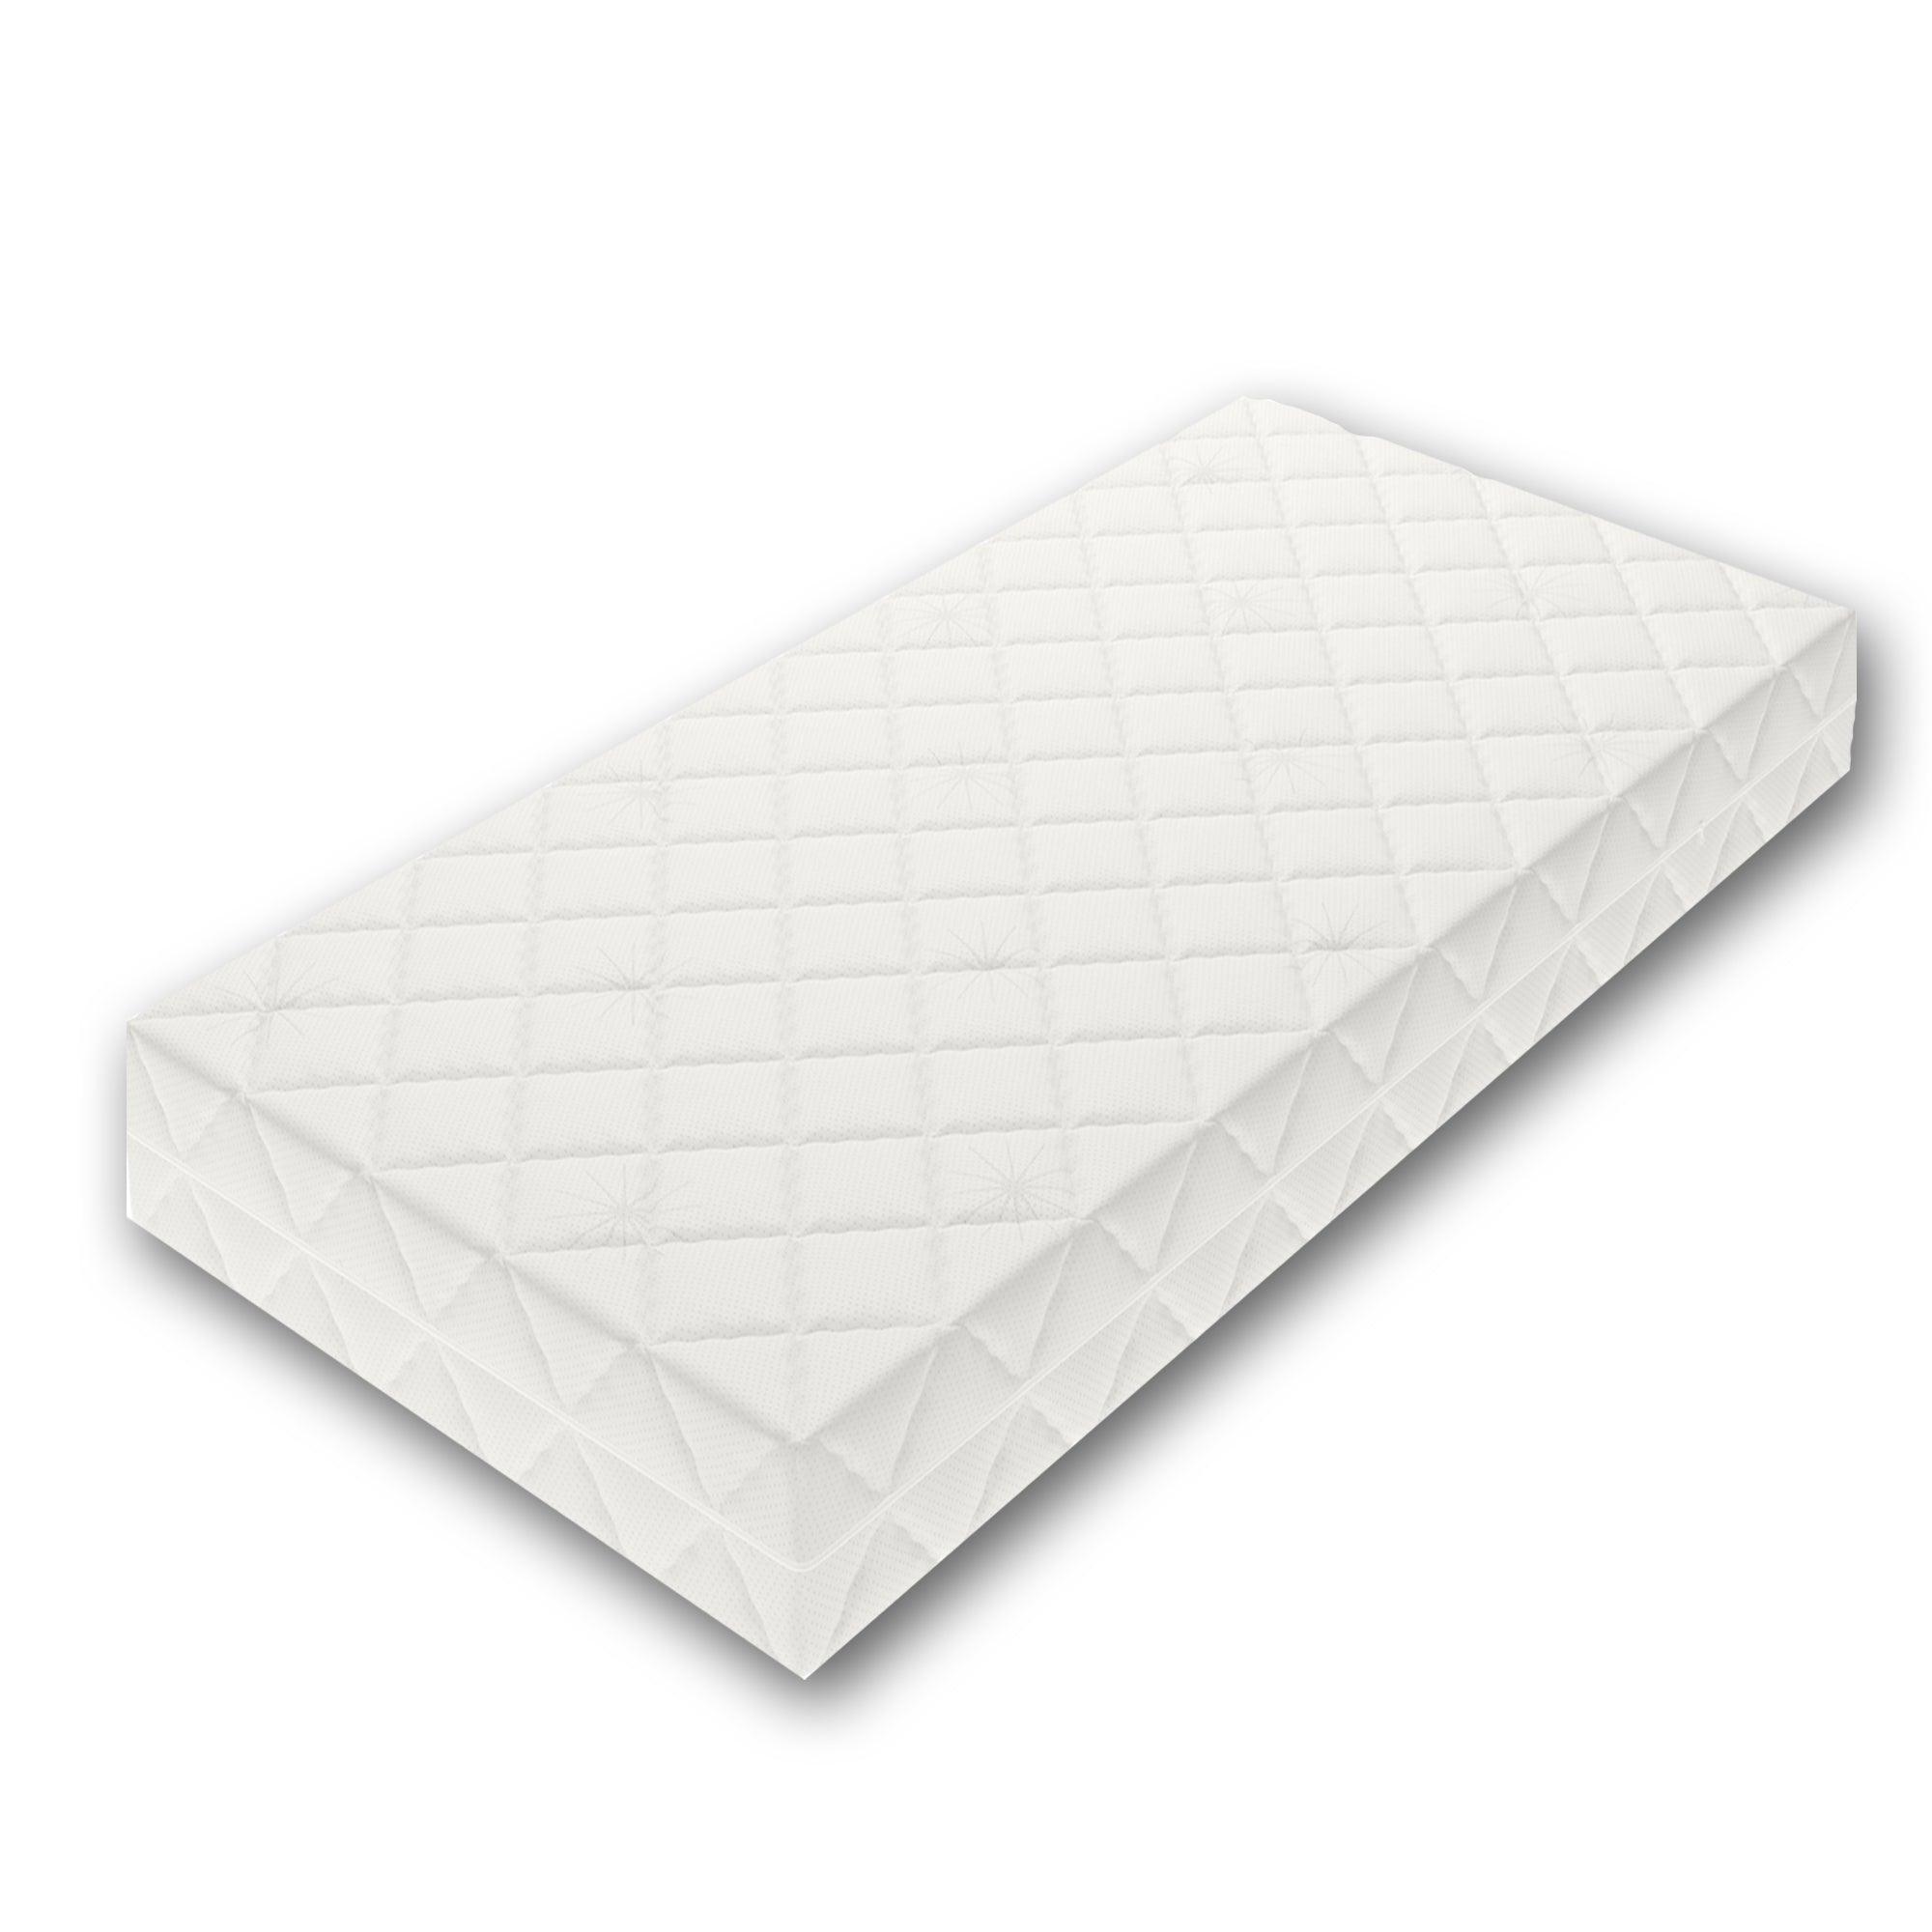 Optima Taschenfederkern Matratze kaufen - Perfekter Schlafkomfort